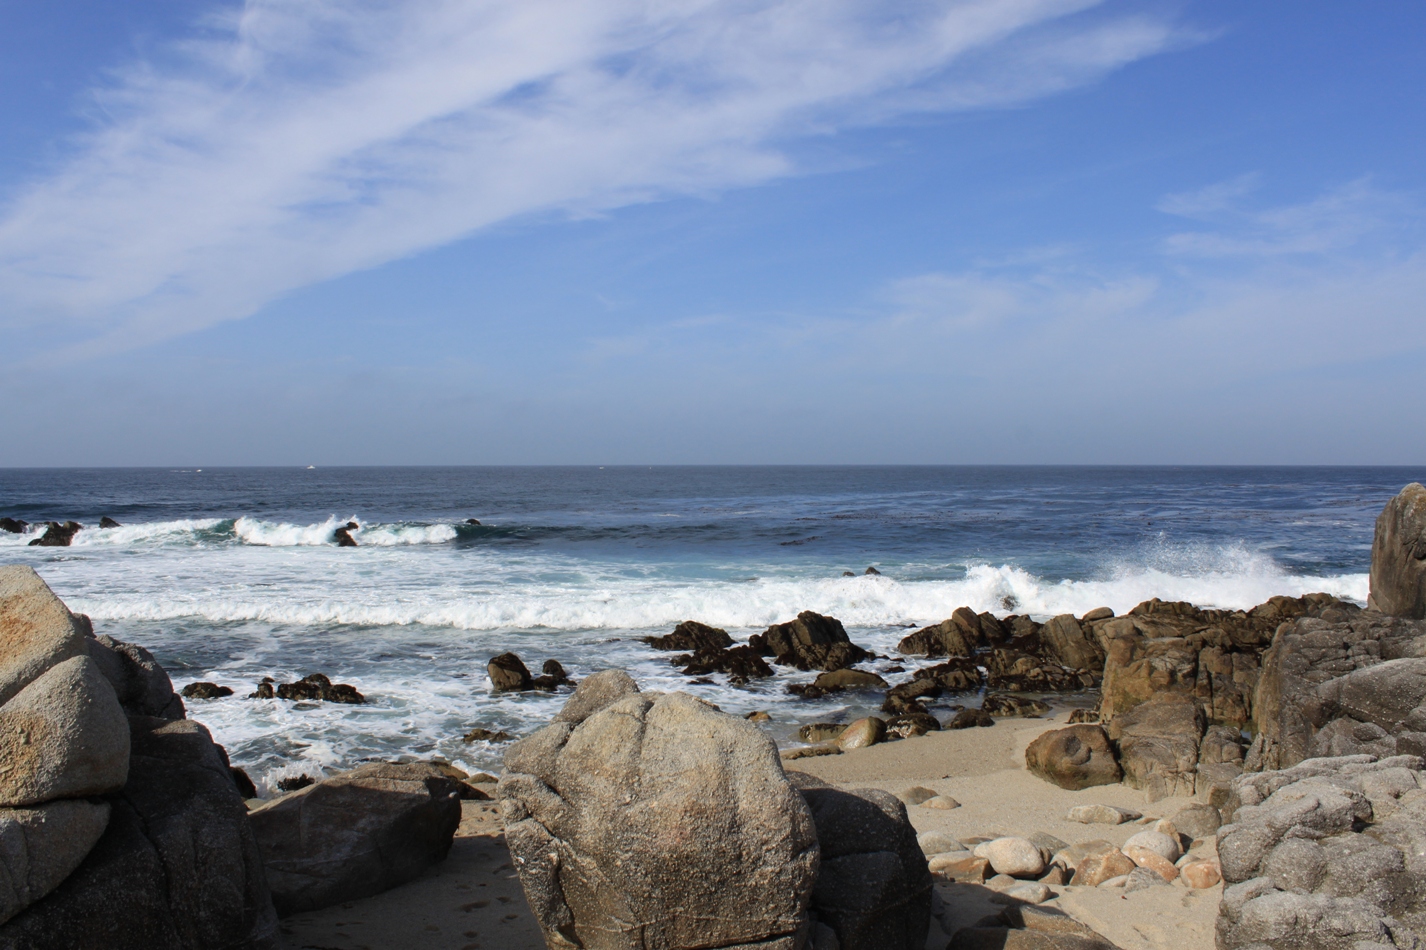 Monterey Peninsula: A short stop for some photos – Maven's Photoblog